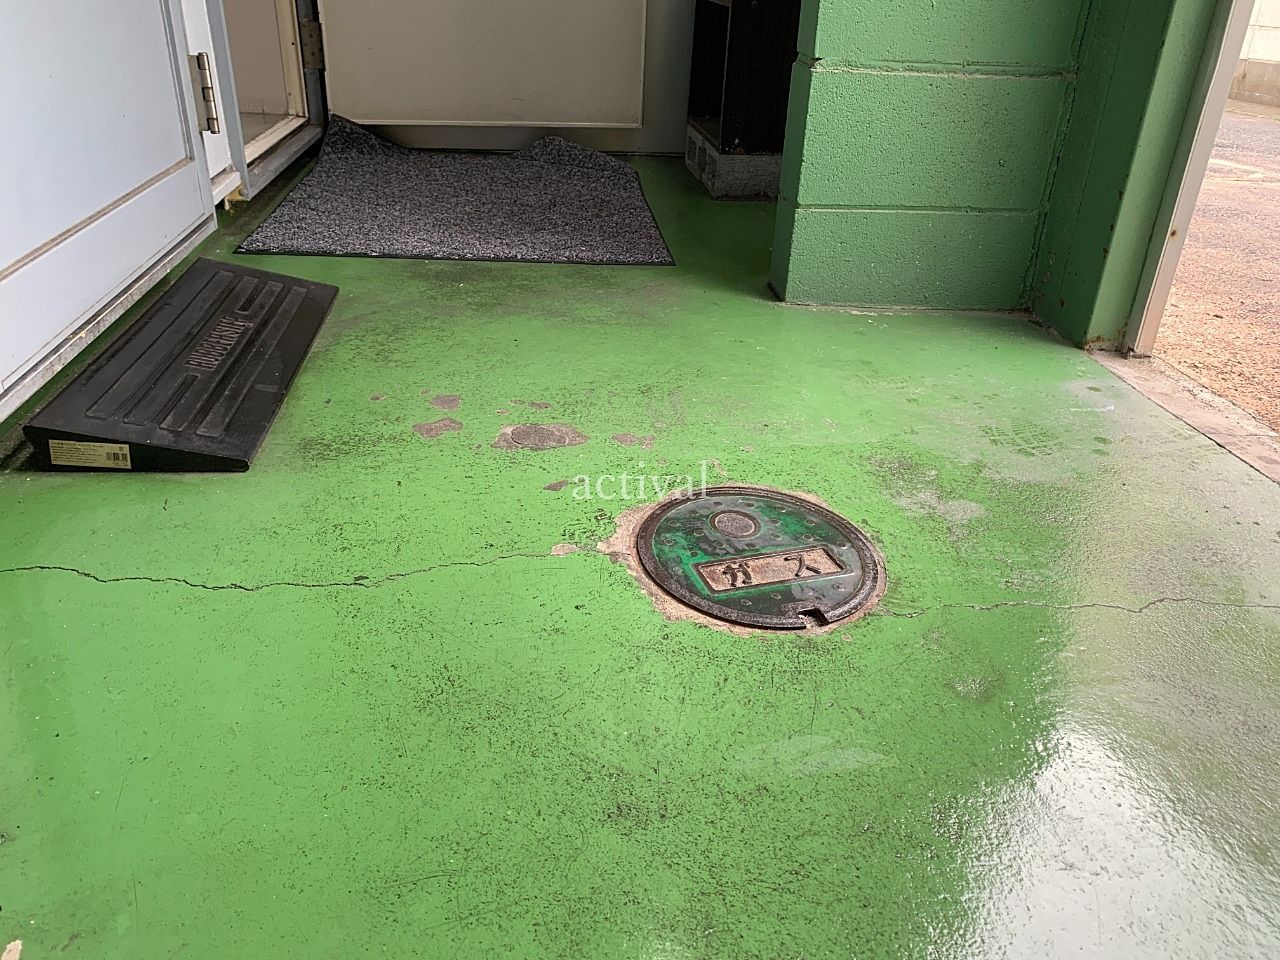 ア・ス・ヴェルデⅢの共用スペースの床掃除をしました。